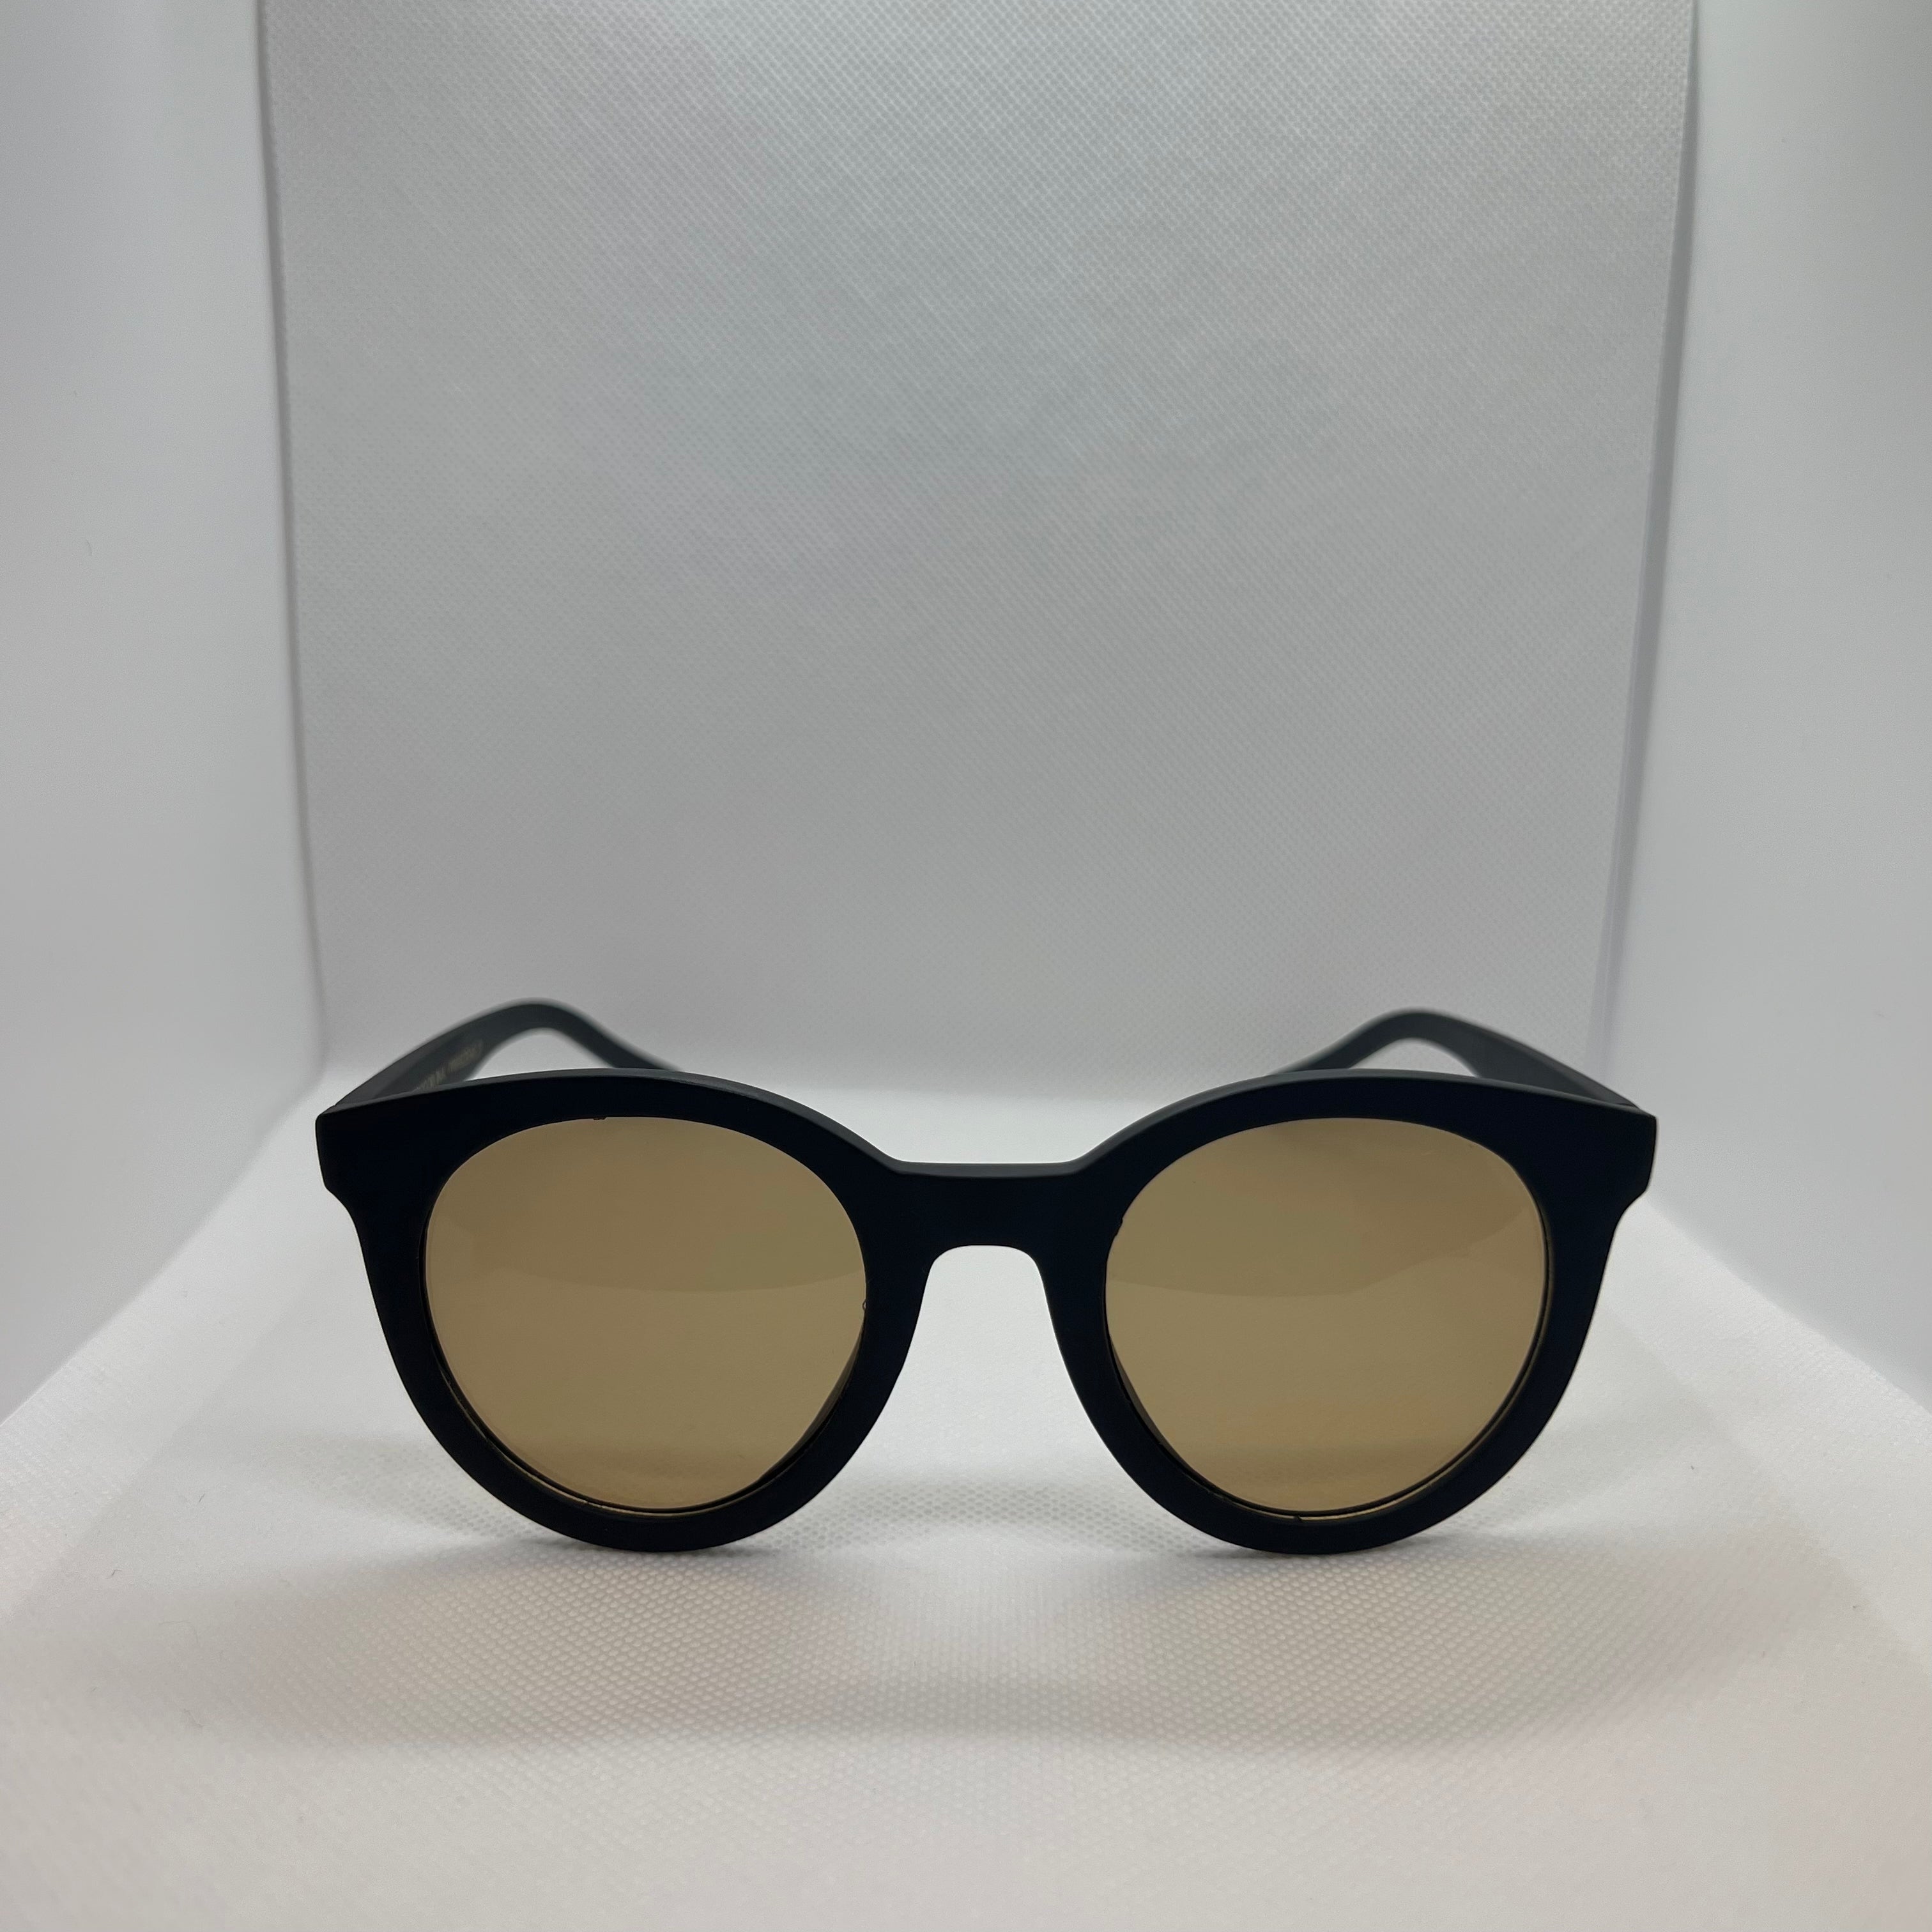 DENIS Sunglasses Rubber Frame Polarized Lenses